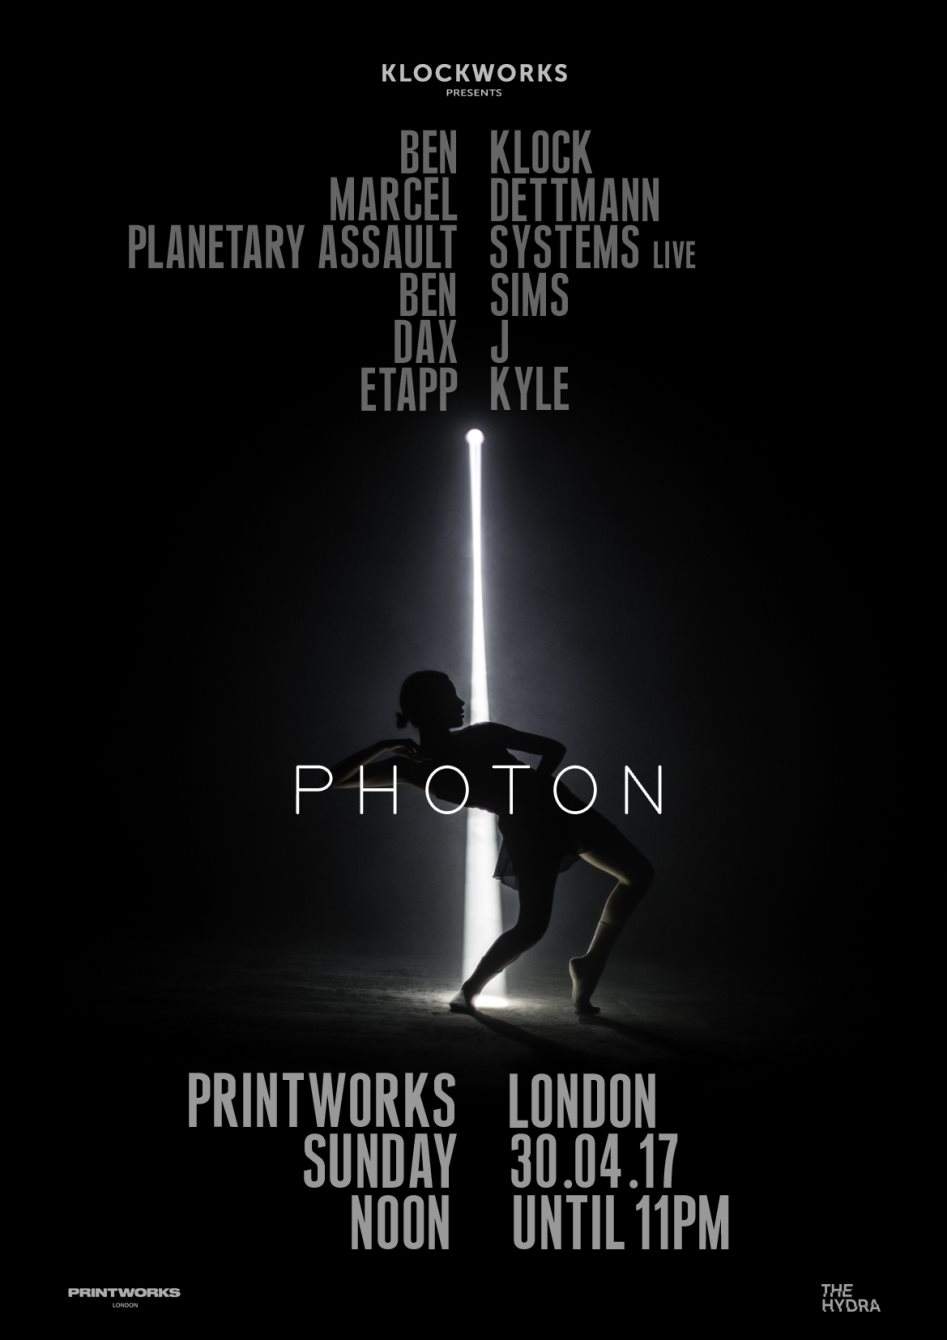 Klockworks presents Photon - Página frontal